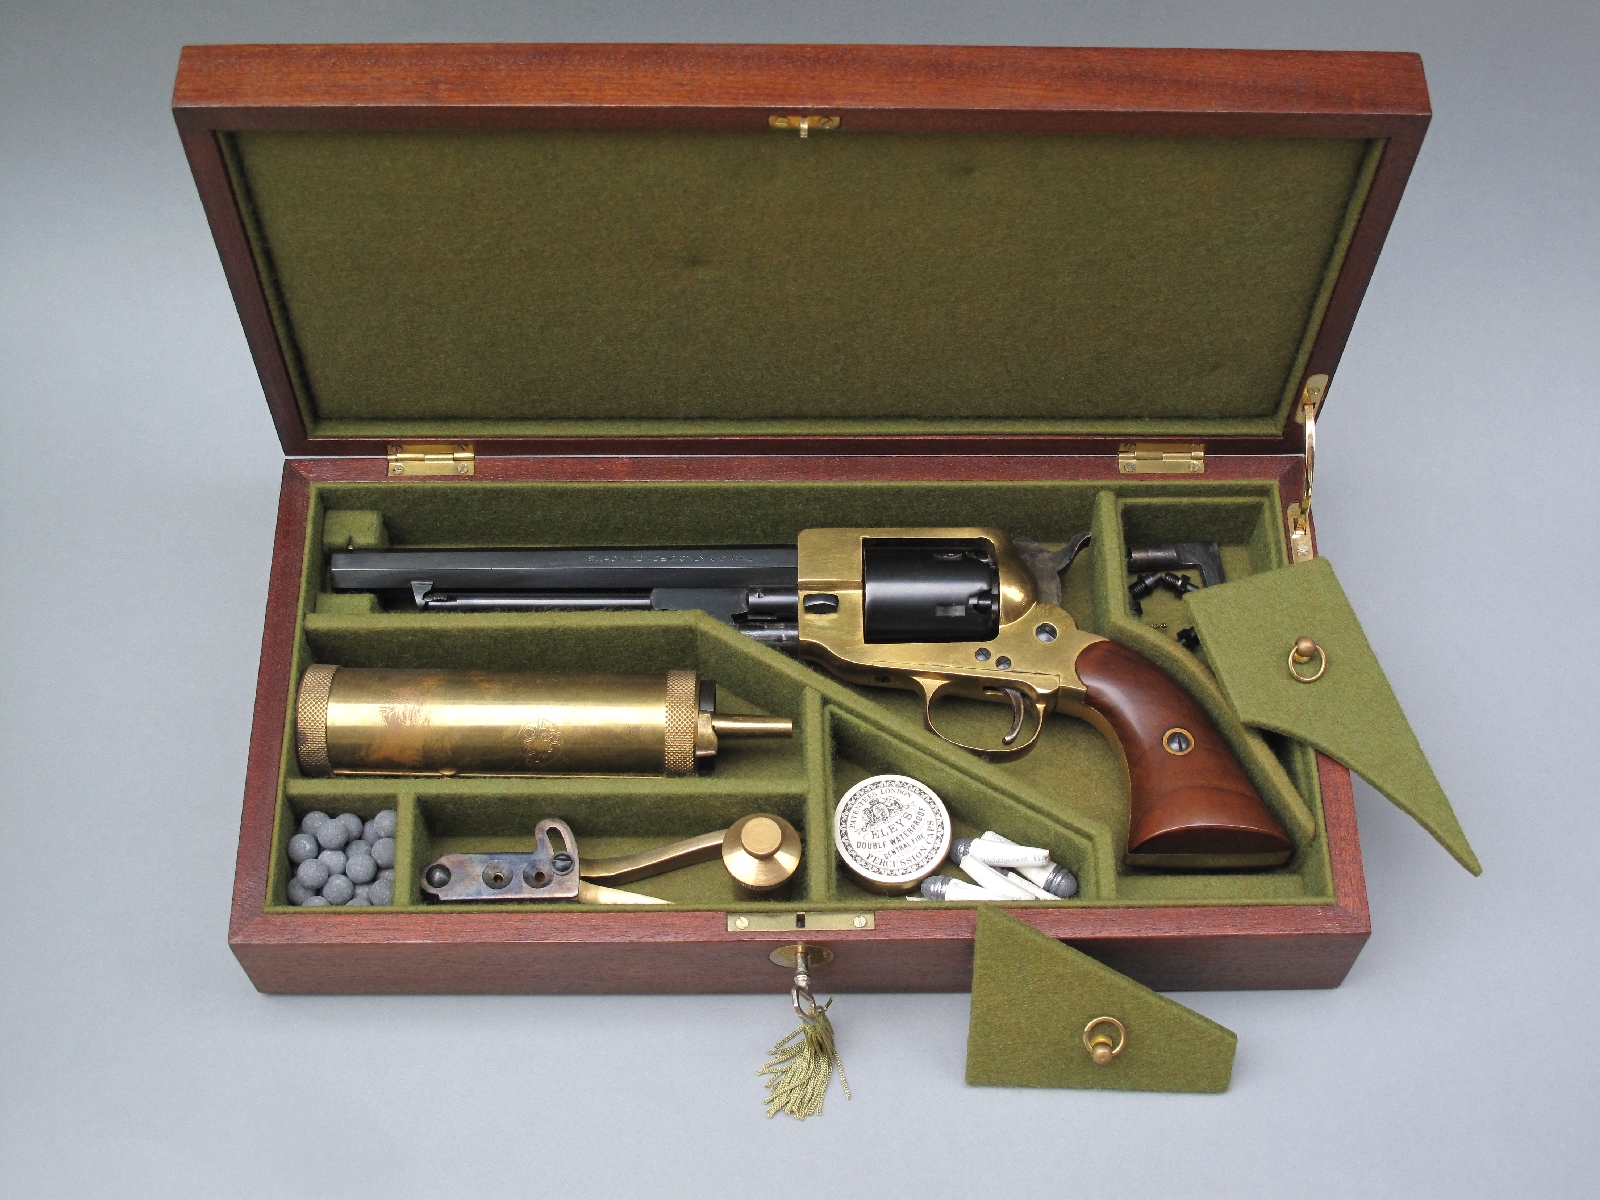 Ce modèle en acajou avec compartiments cloisonnés, garni de feutrine verte, peut être considéré comme l'archétype des coffrets conçus pour les revolvers américains vers le milieu du XIXème siècle. Celui-ci contient une réplique de revolver sudiste Spiller & Burr 1863 fabriquée par la firme italienne Pietta.